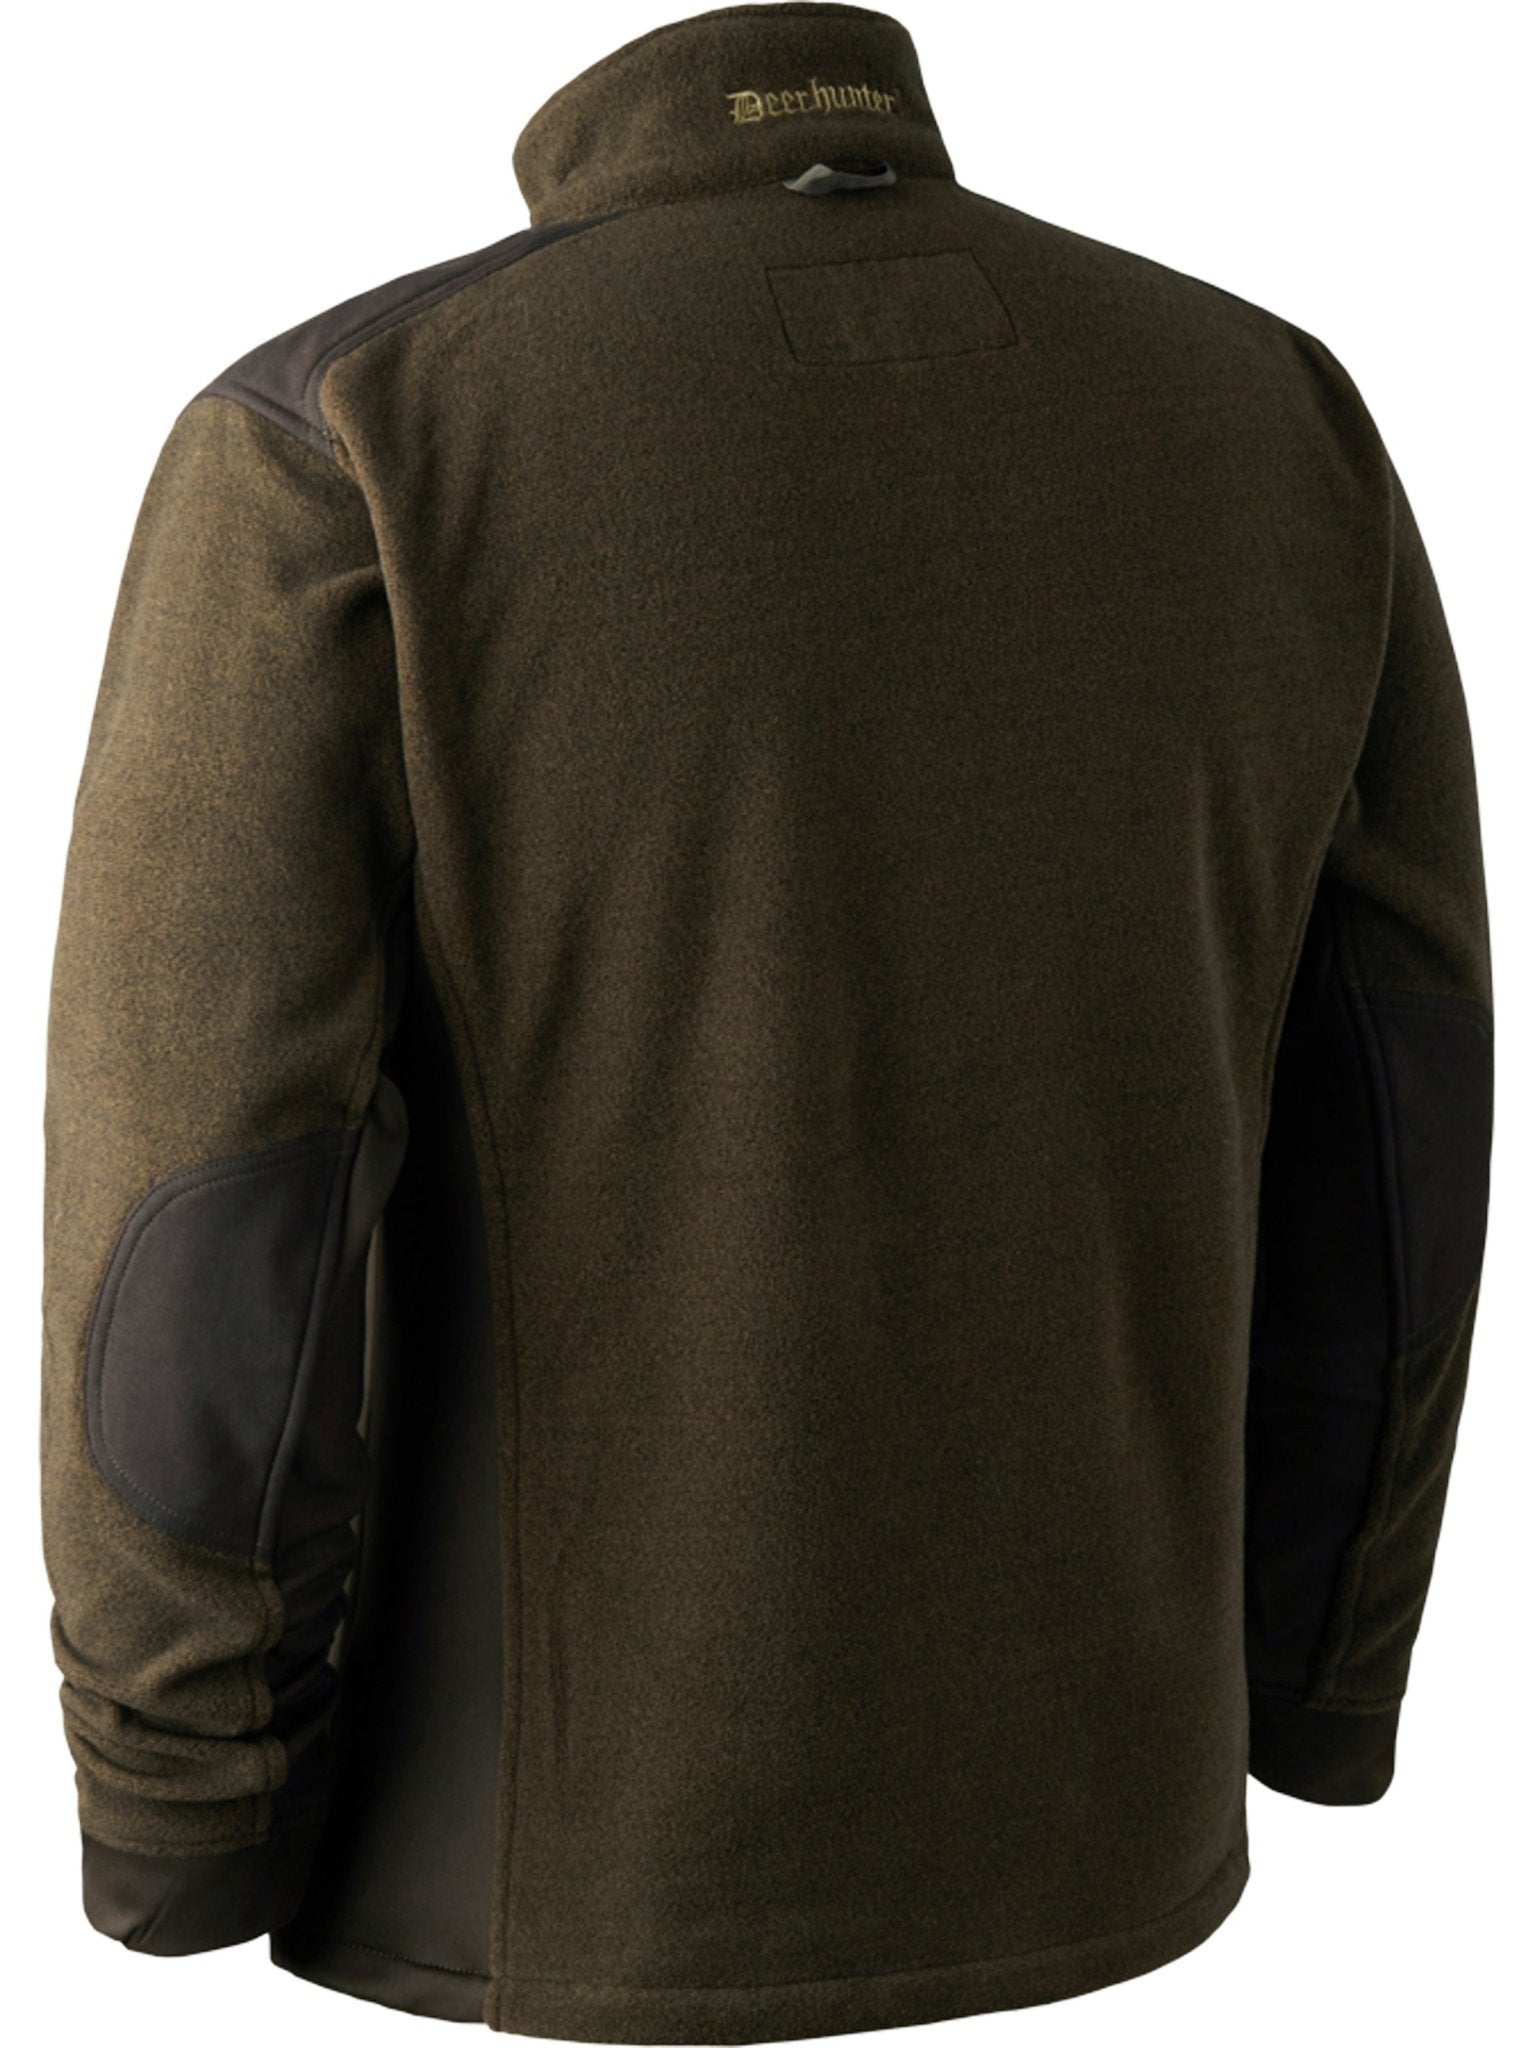 4elementsclothingDeerhunterDeerhunter - Muflon Zip-In Fleece Jacket / Mens Insulated fleece JacketFleece & Gilet5721-376-48